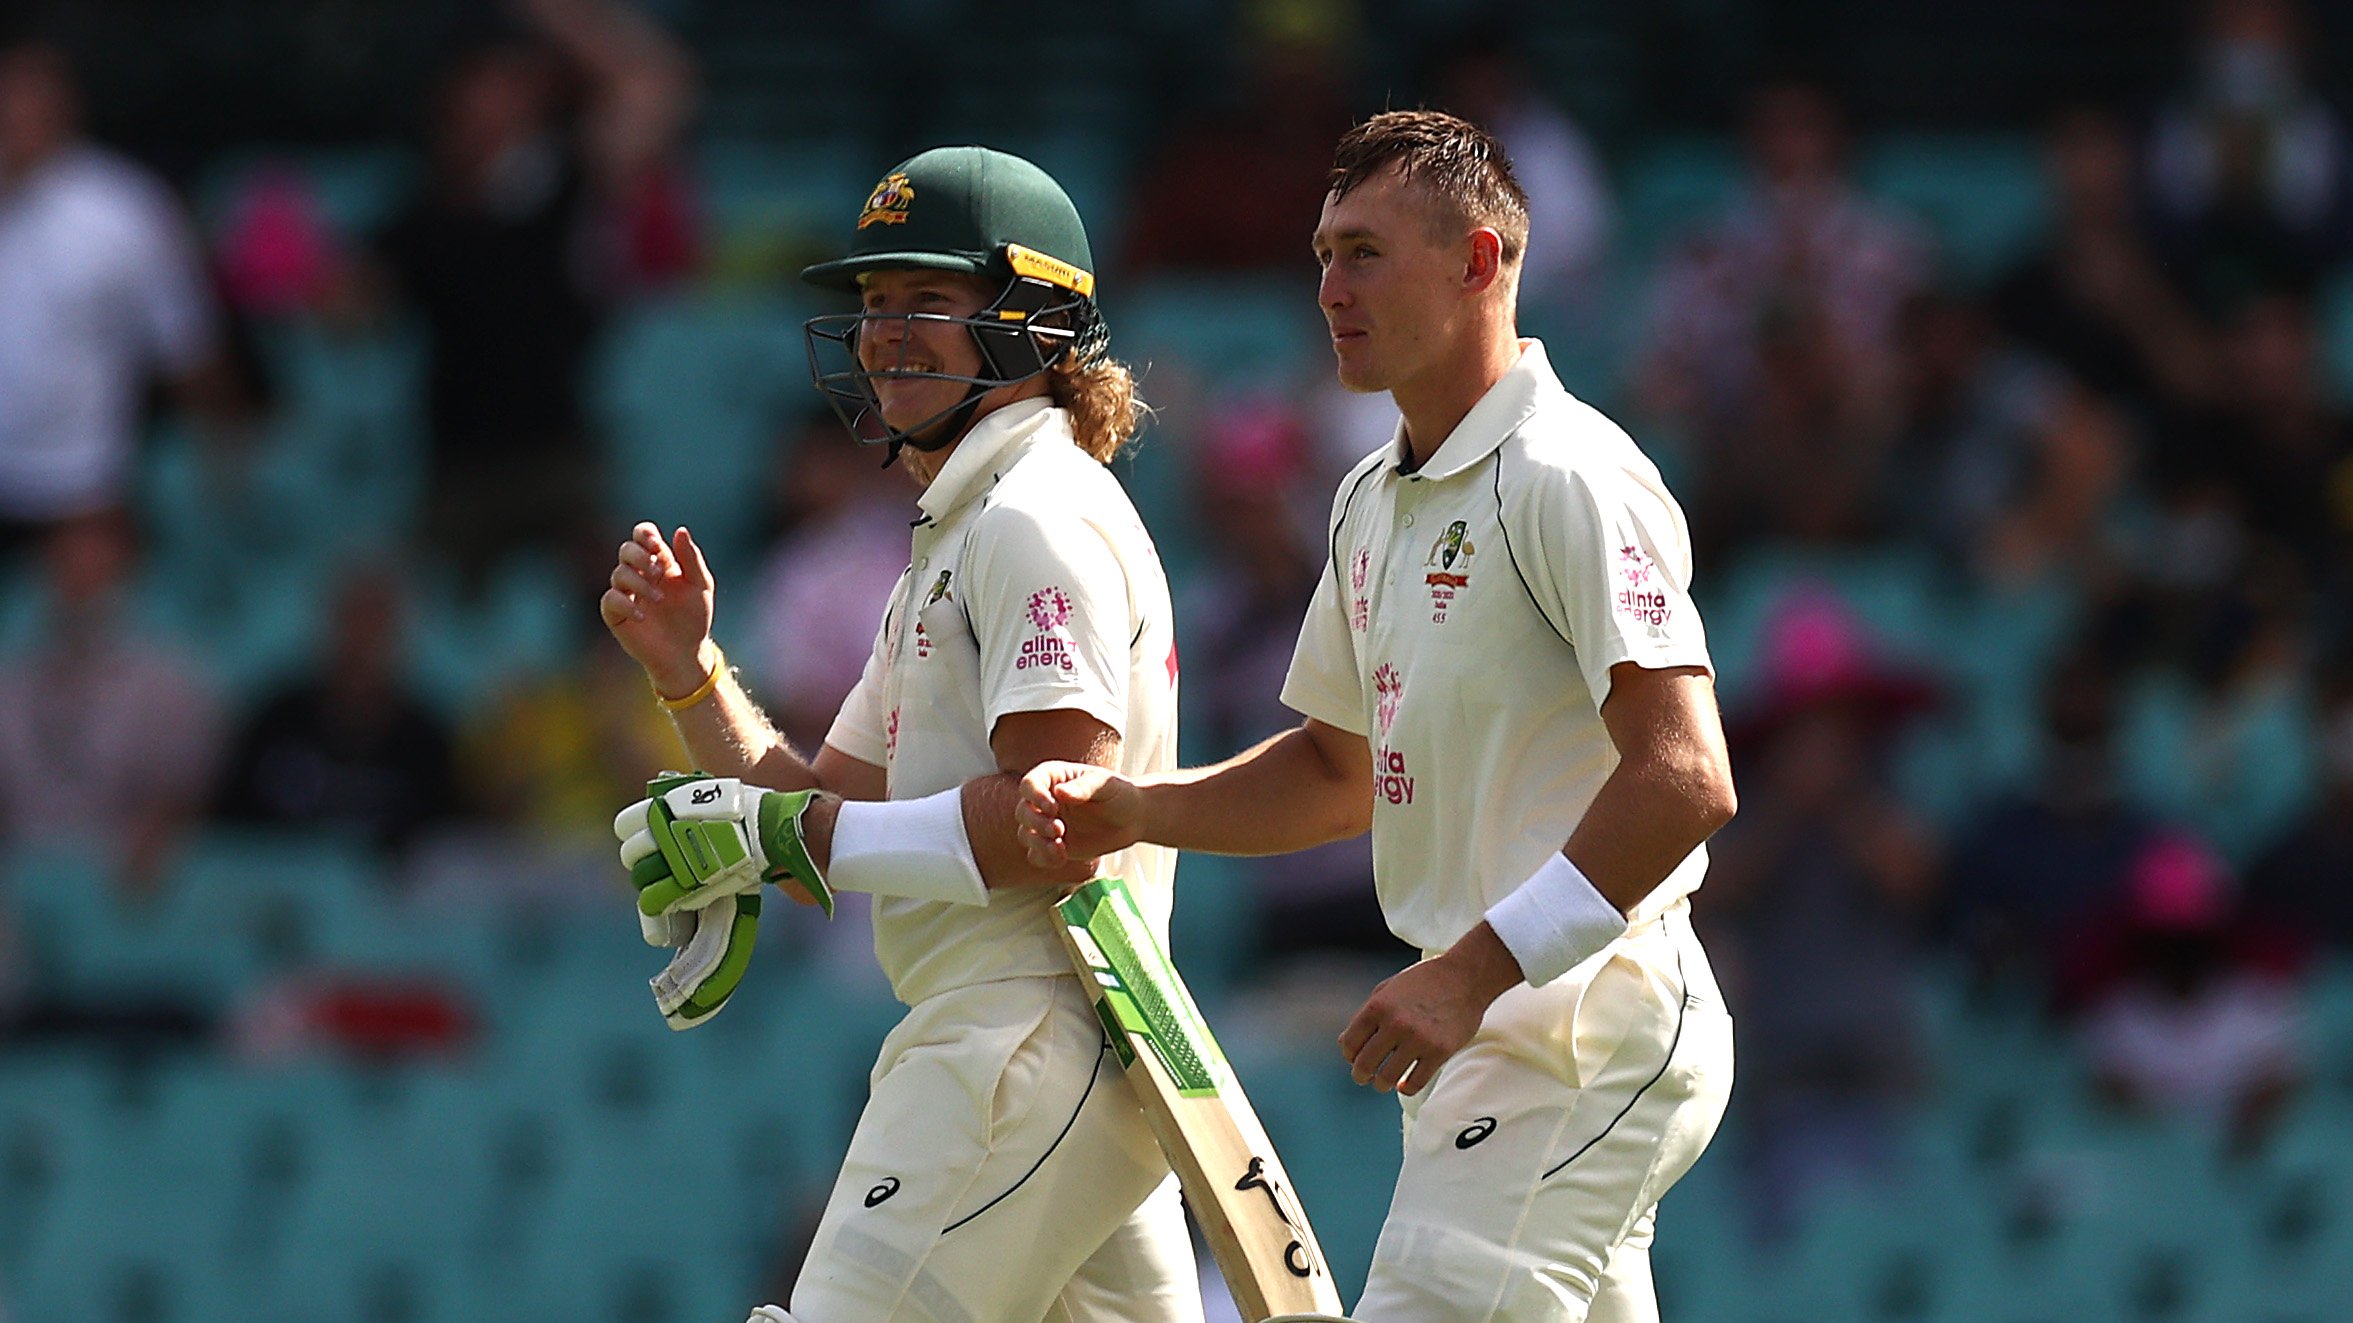 AUS vs IND: Will Puckovski, Marnus Labuschagne put Australia ahead on Day 1 of third Test